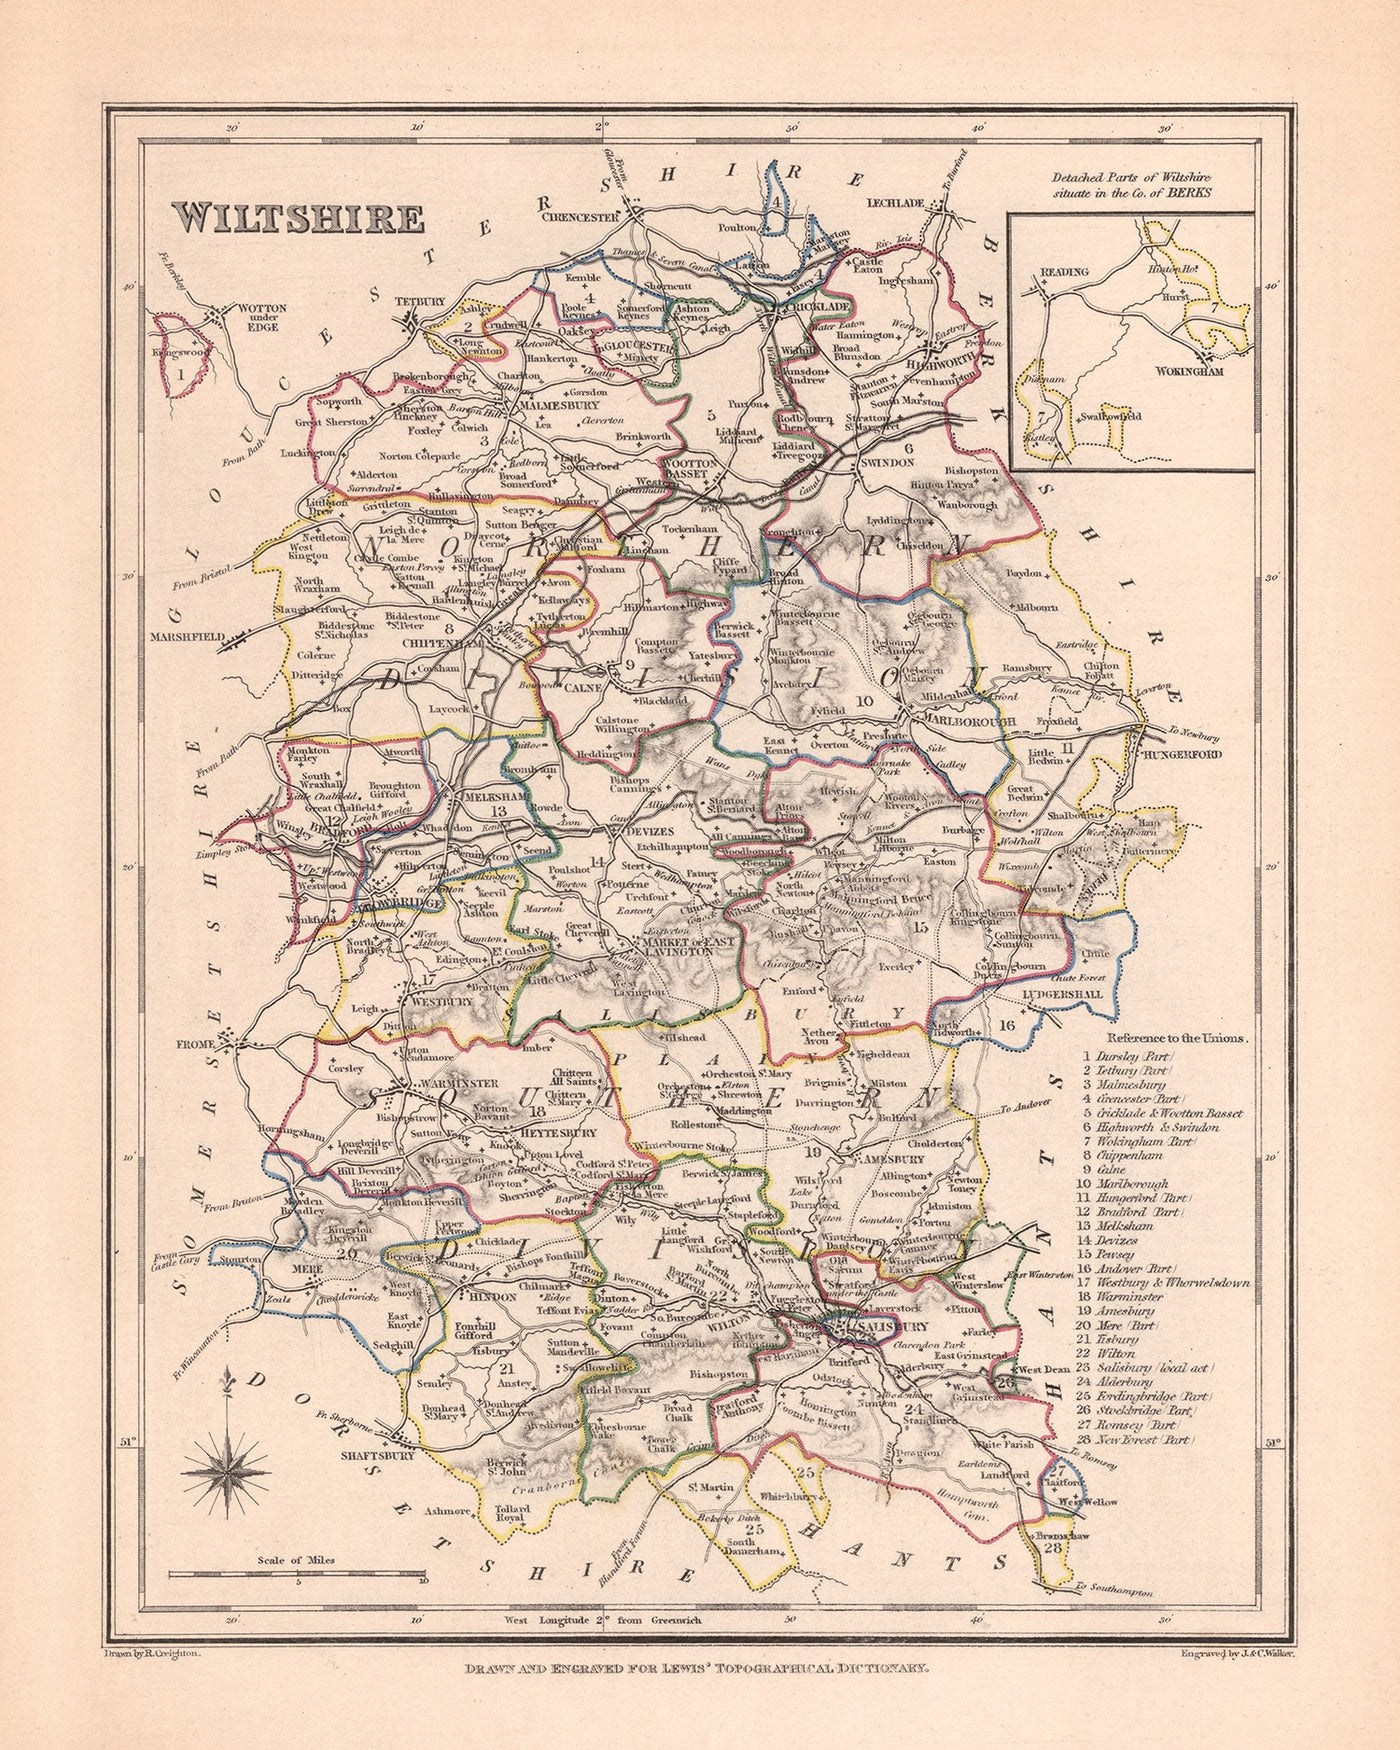 Ancienne carte du Wiltshire par Samuel Lewis, 1844 : Salisbury, Devizes, Marlborough, Chippenham, Stonehenge